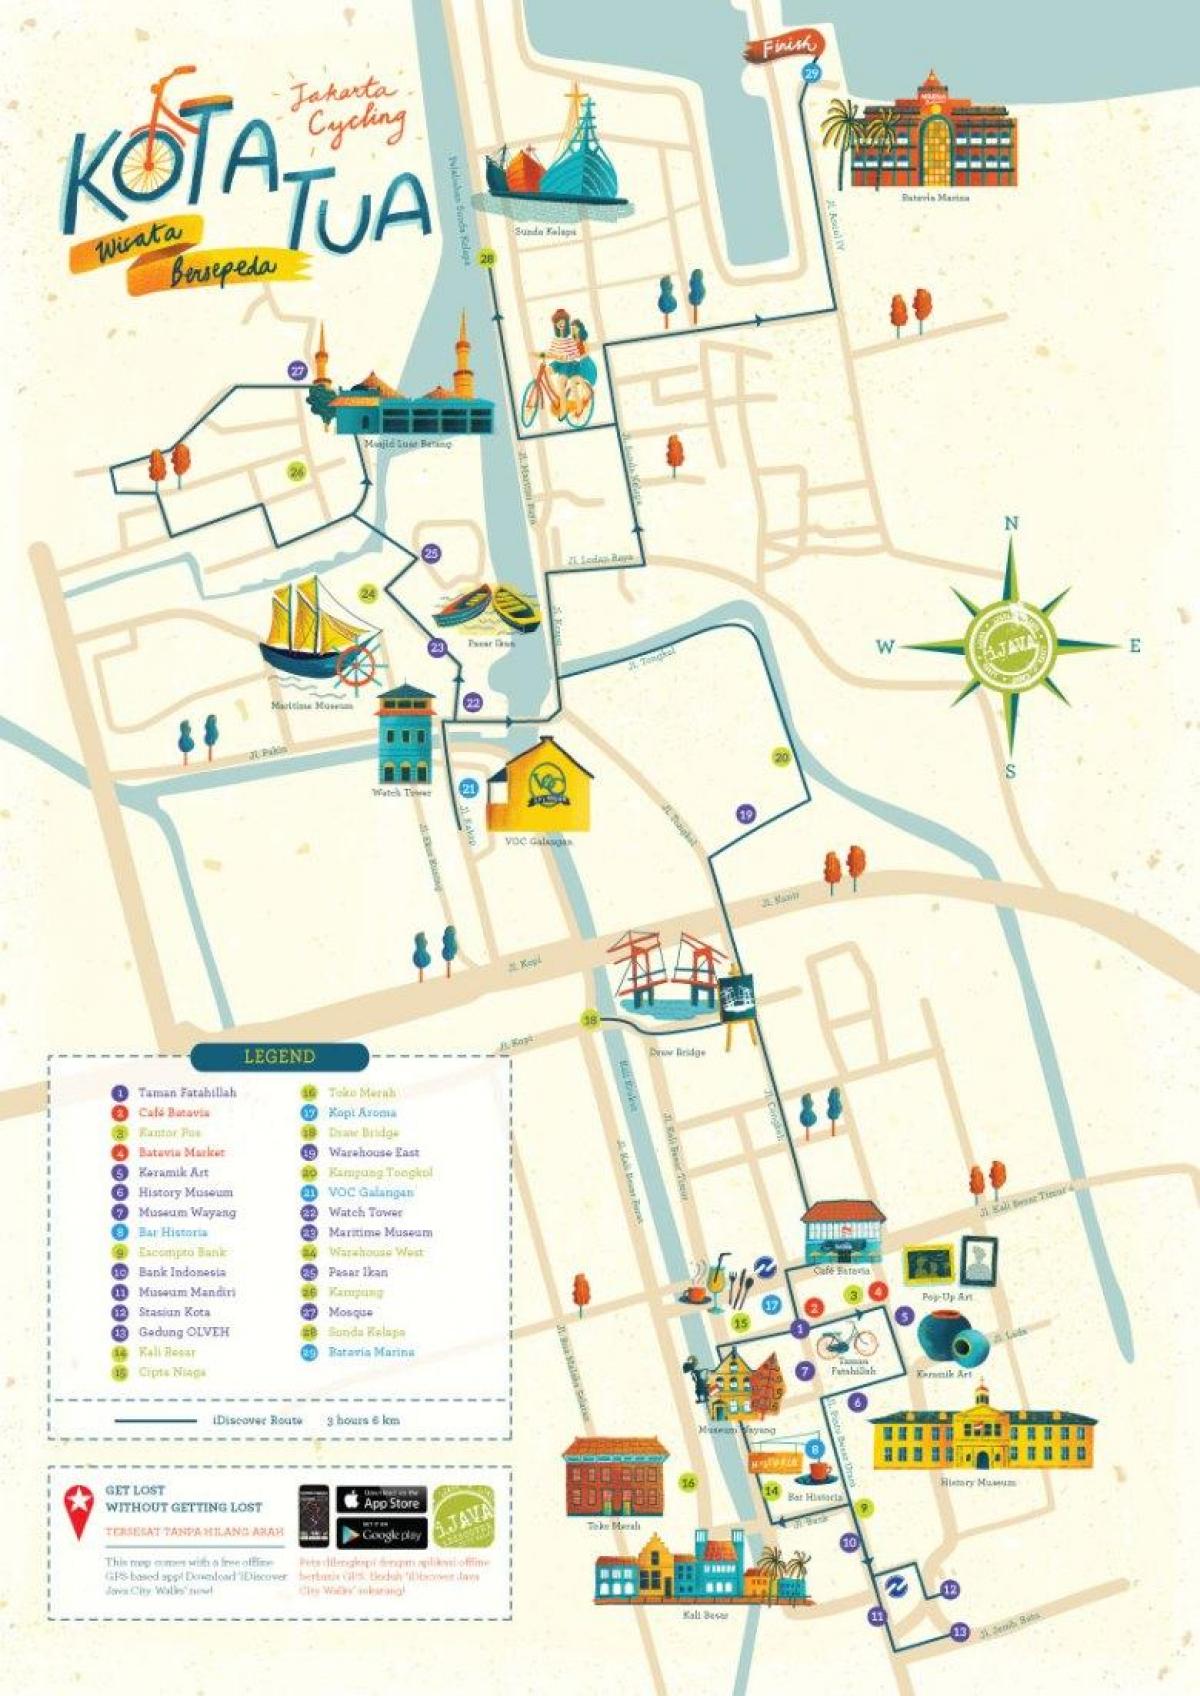 kart over Jakarta kota